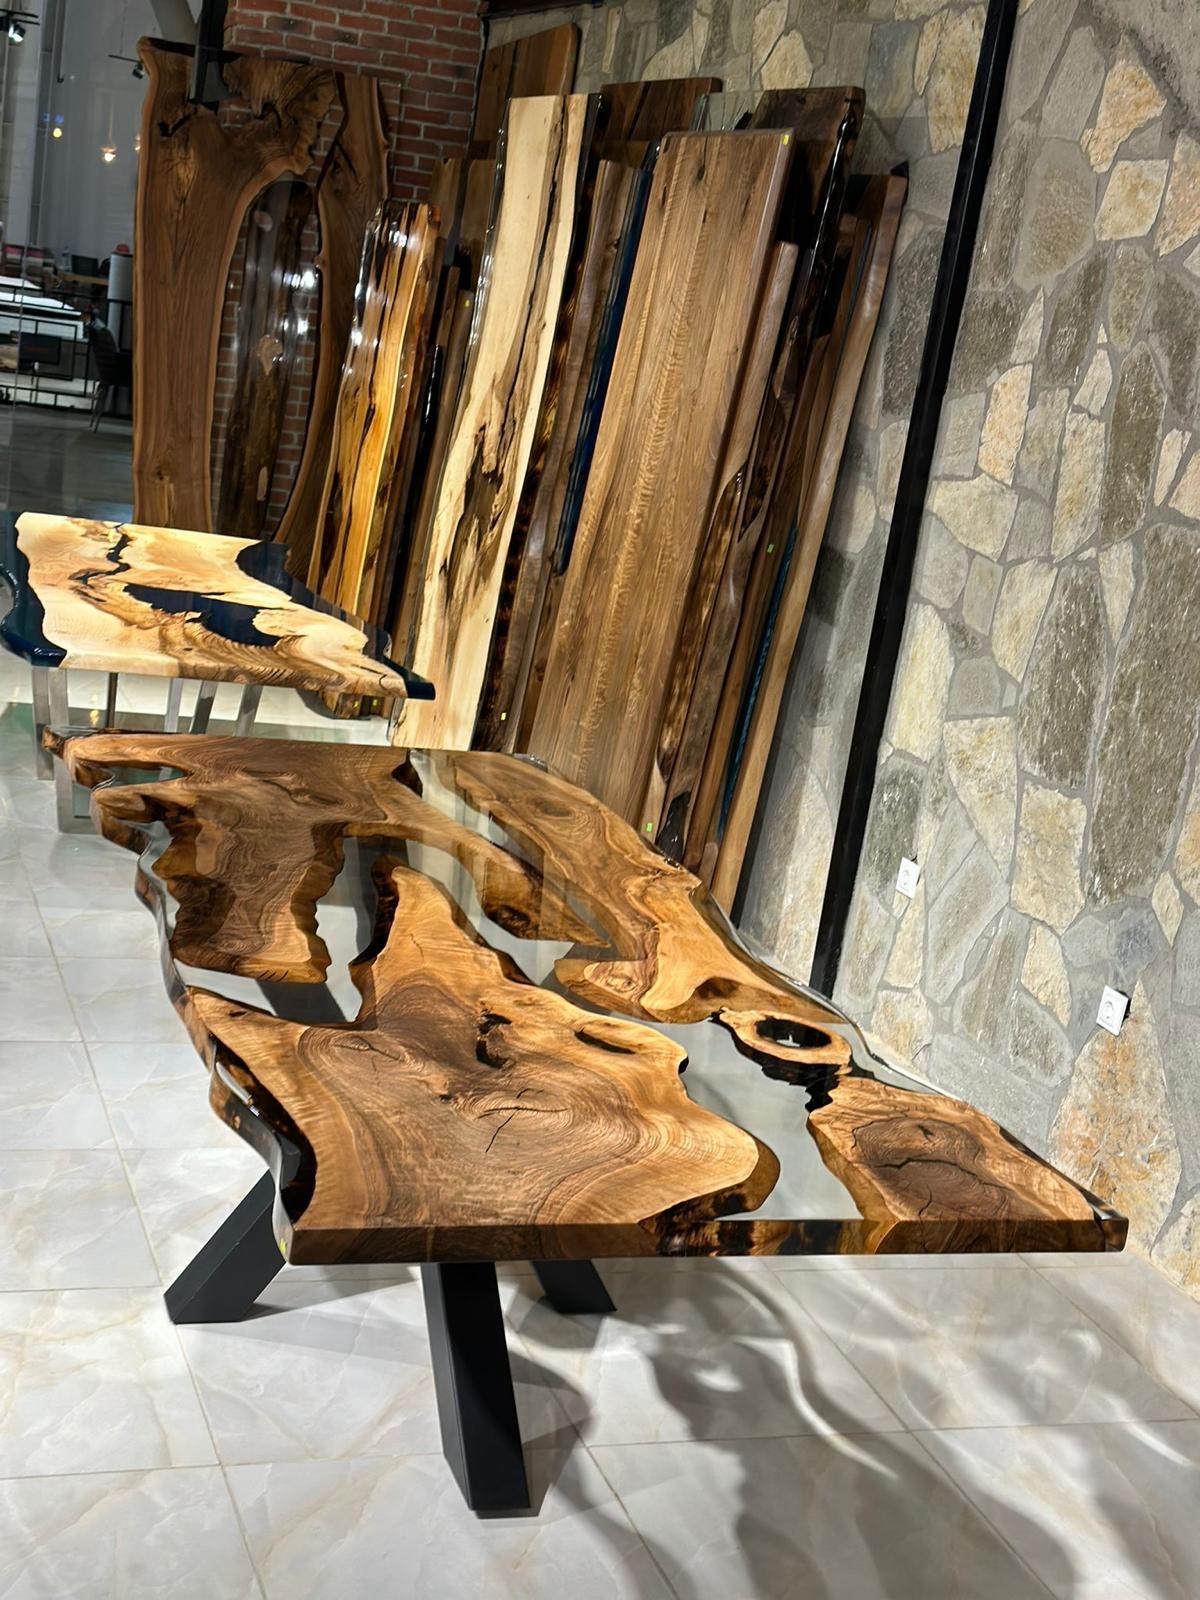 Table de salle à manger ronde en noyer à bord vif sur mesure en résine époxy transparente 

Cette table est fabriquée en bois de noyer vieux de 500 ans. Les veines et la texture du bois décrivent l'aspect d'un bois de noyer naturel.
Elle peut être